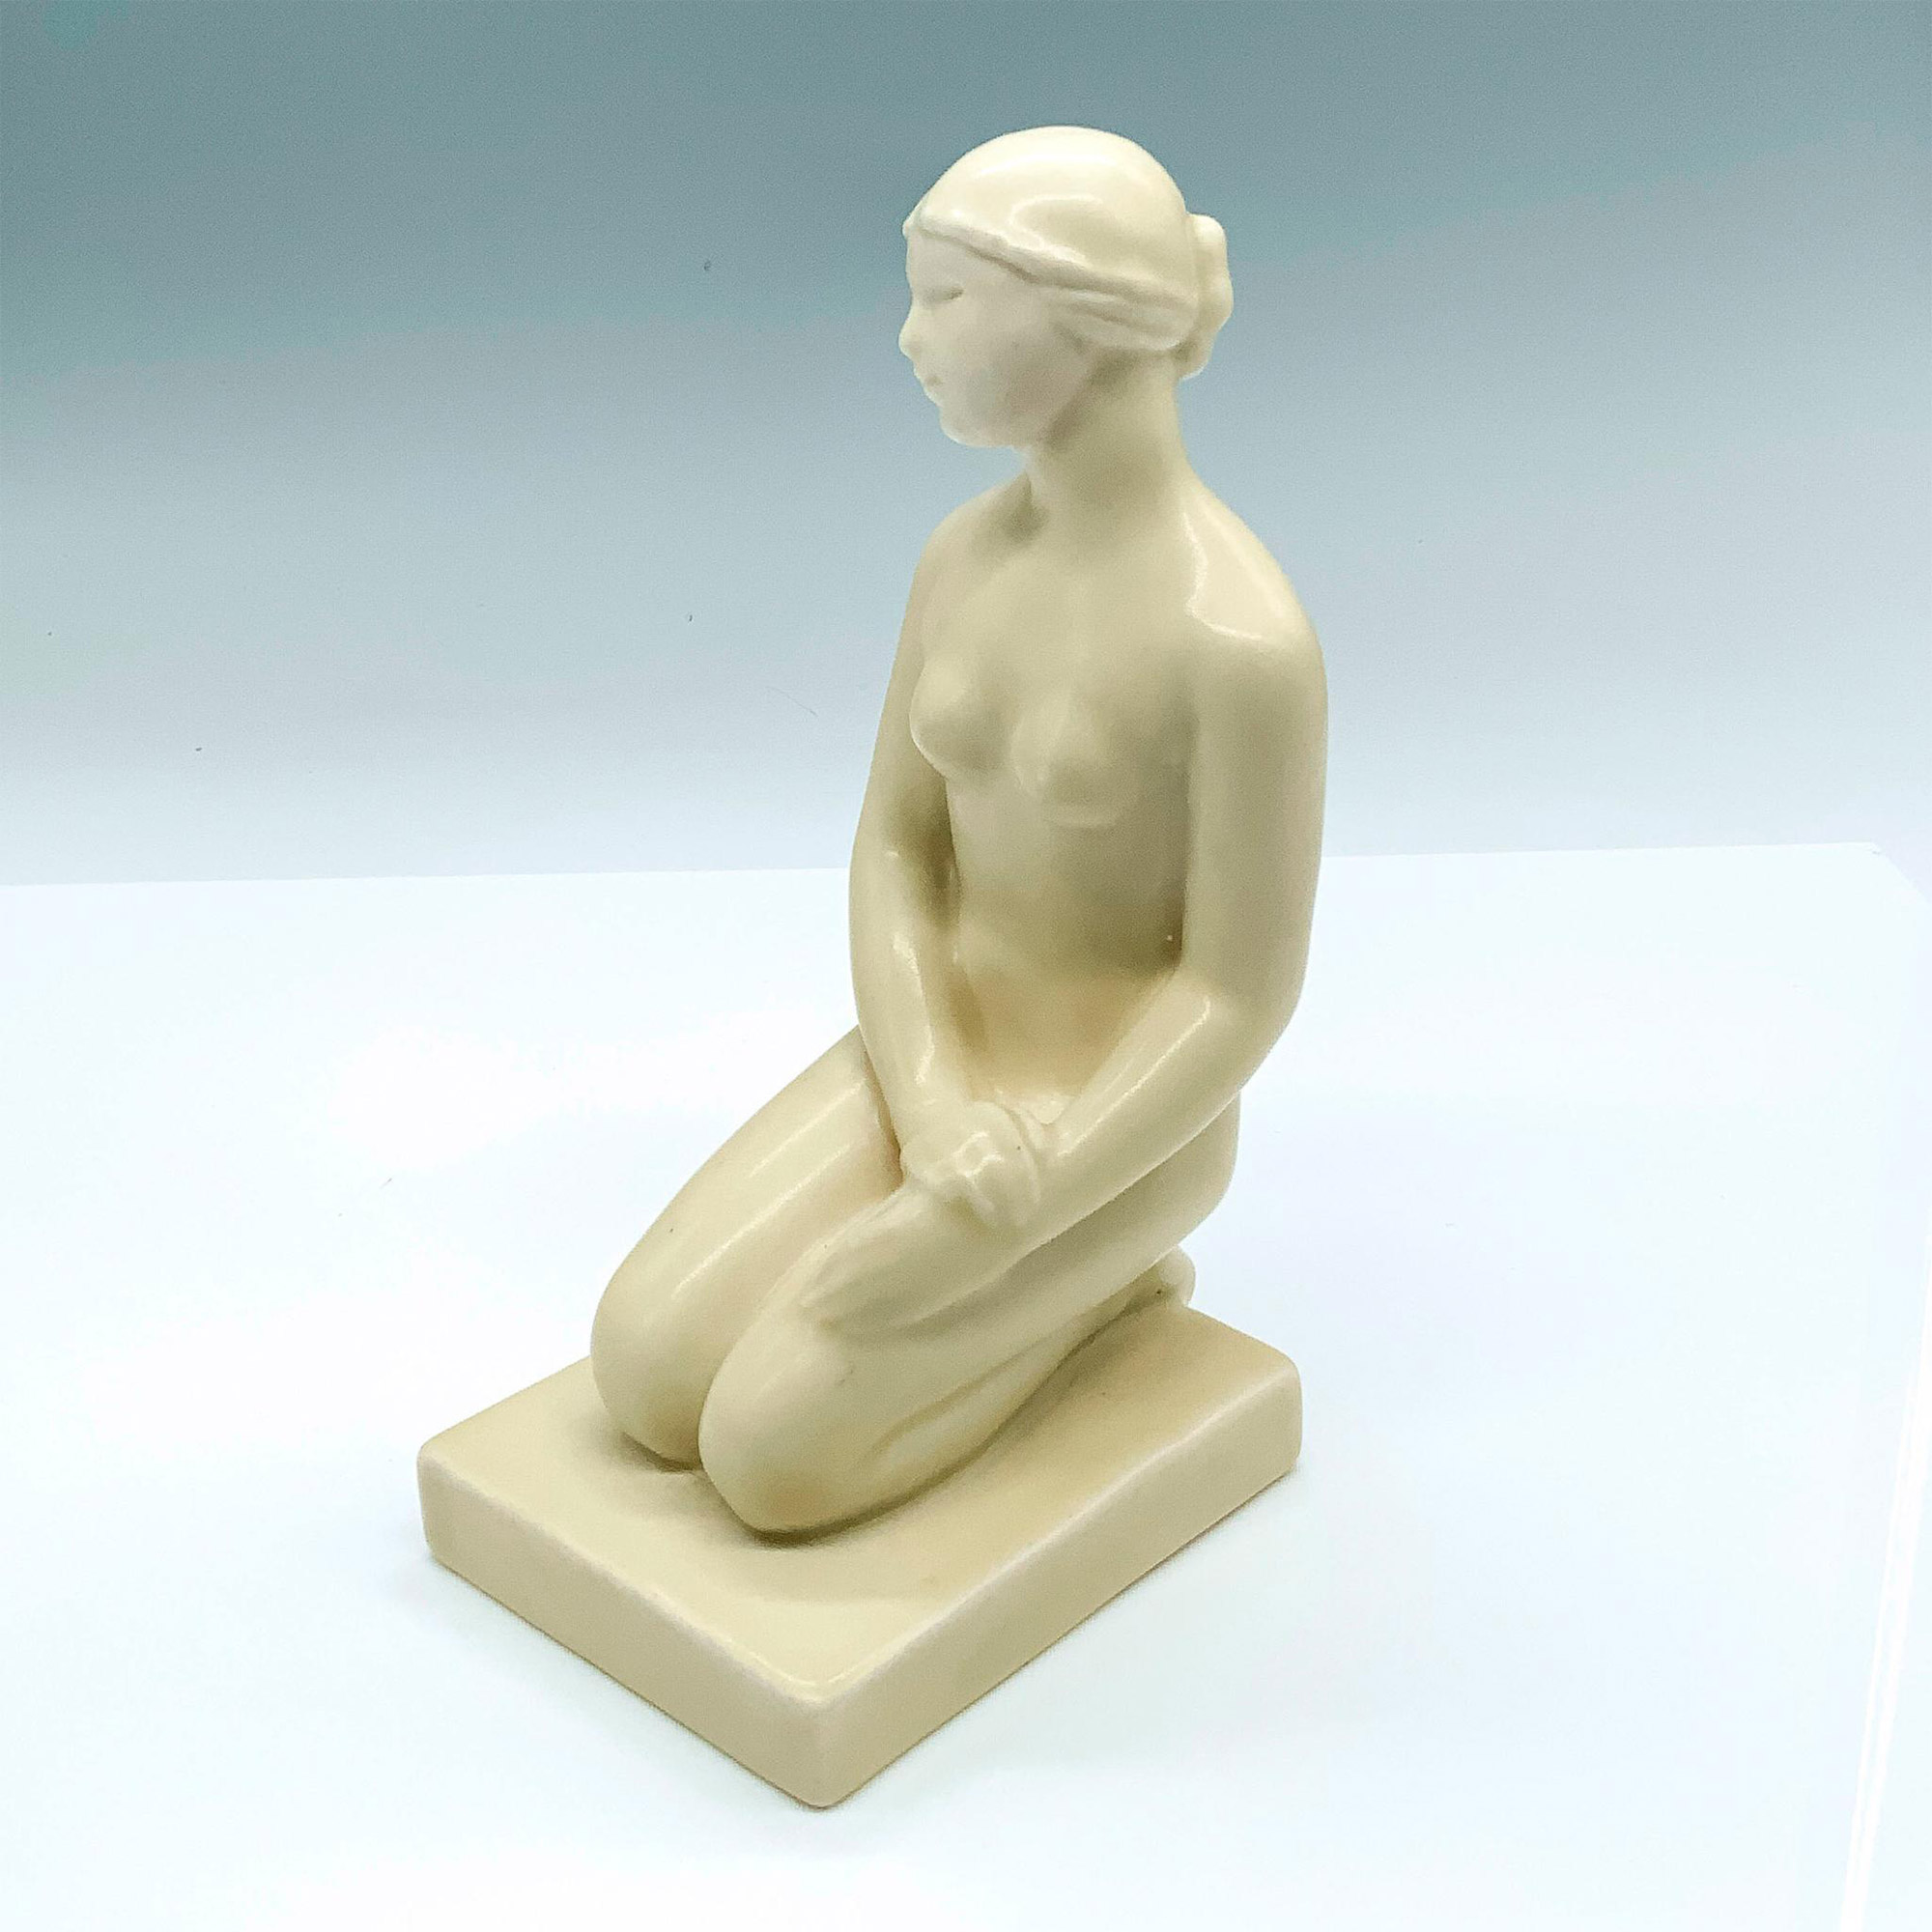 Rookwood Pottery Kneeling Nude Woman Figurine #6159 - Image 2 of 4